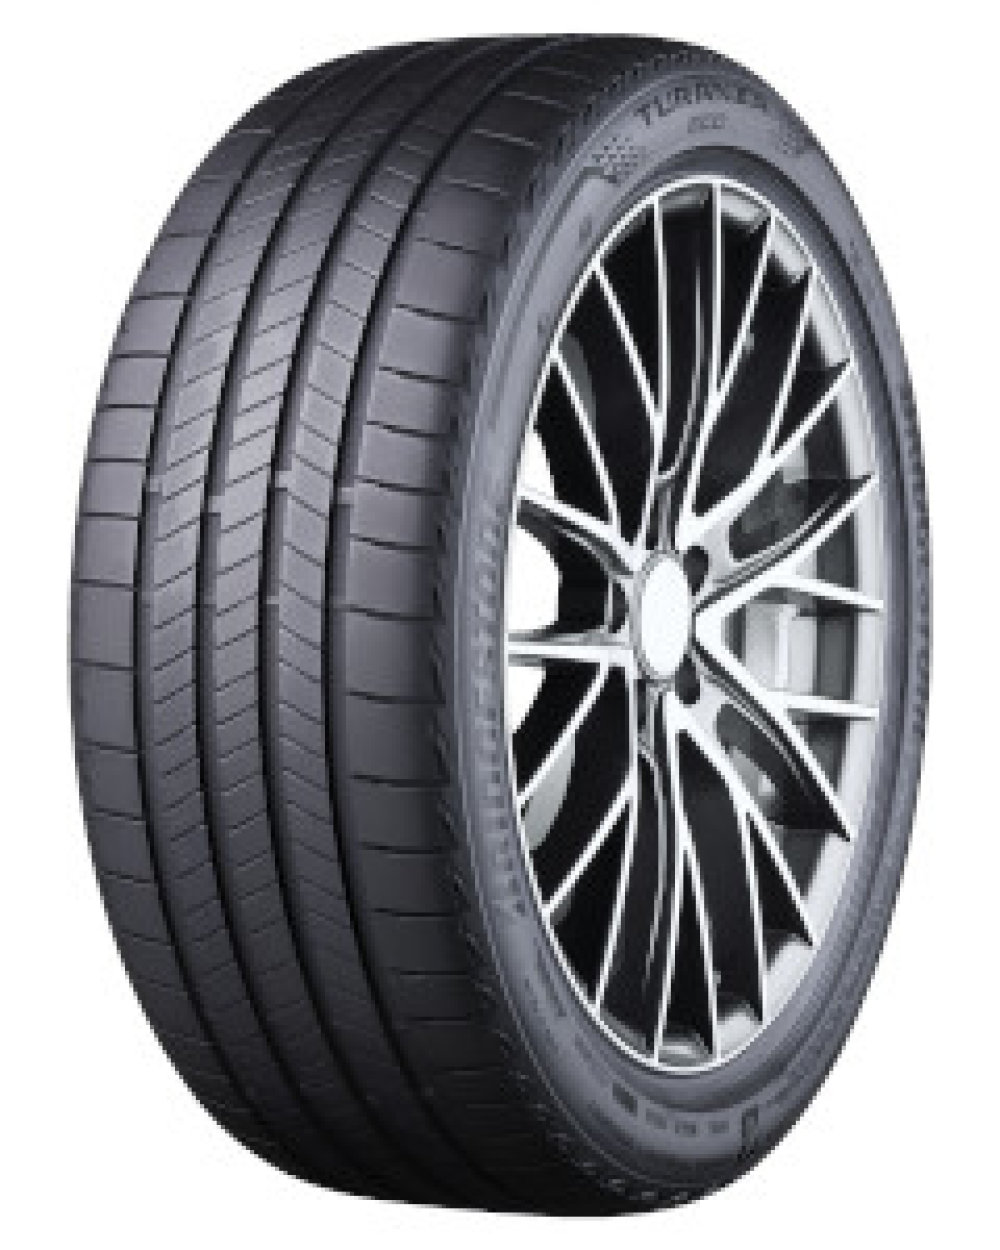 Bridgestone Turanza Eco ( 235/50 R20 100T (+), AO, B-Seal, Enliten )